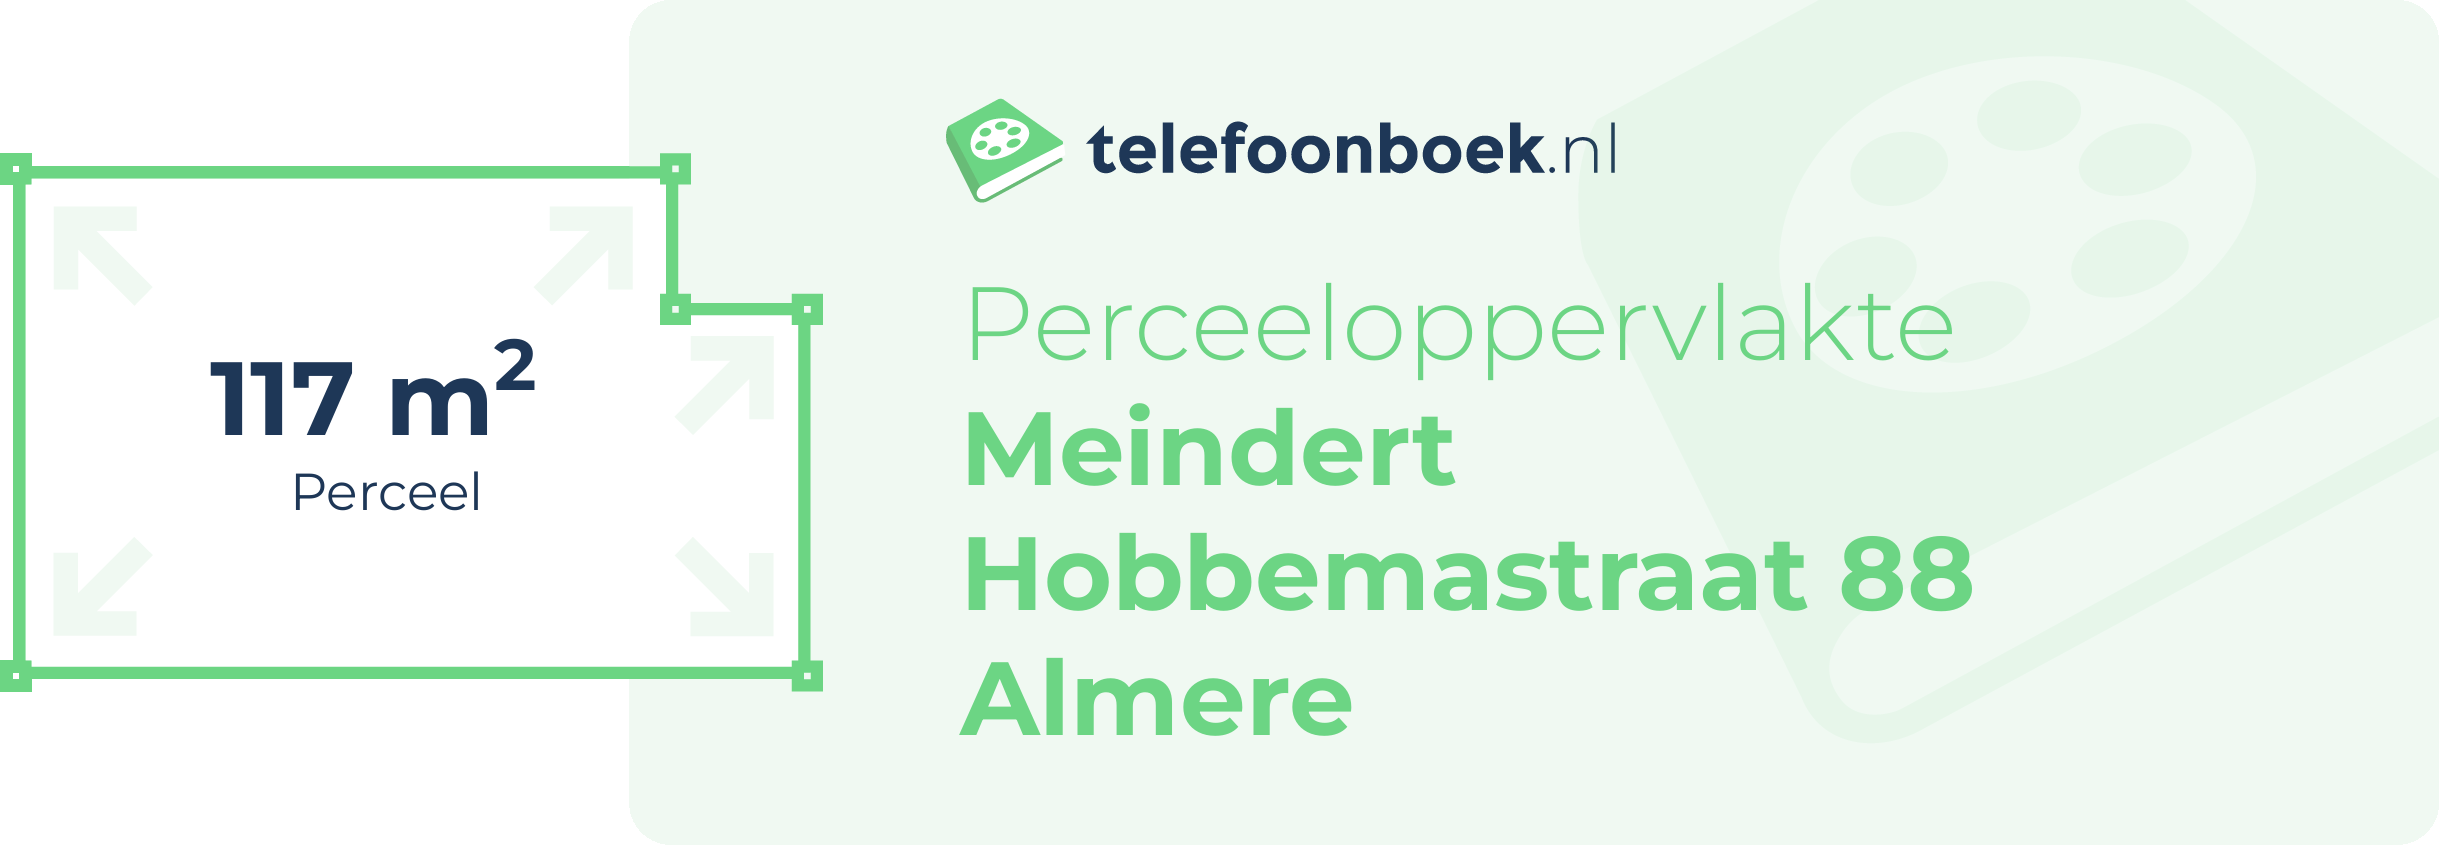 Perceeloppervlakte Meindert Hobbemastraat 88 Almere